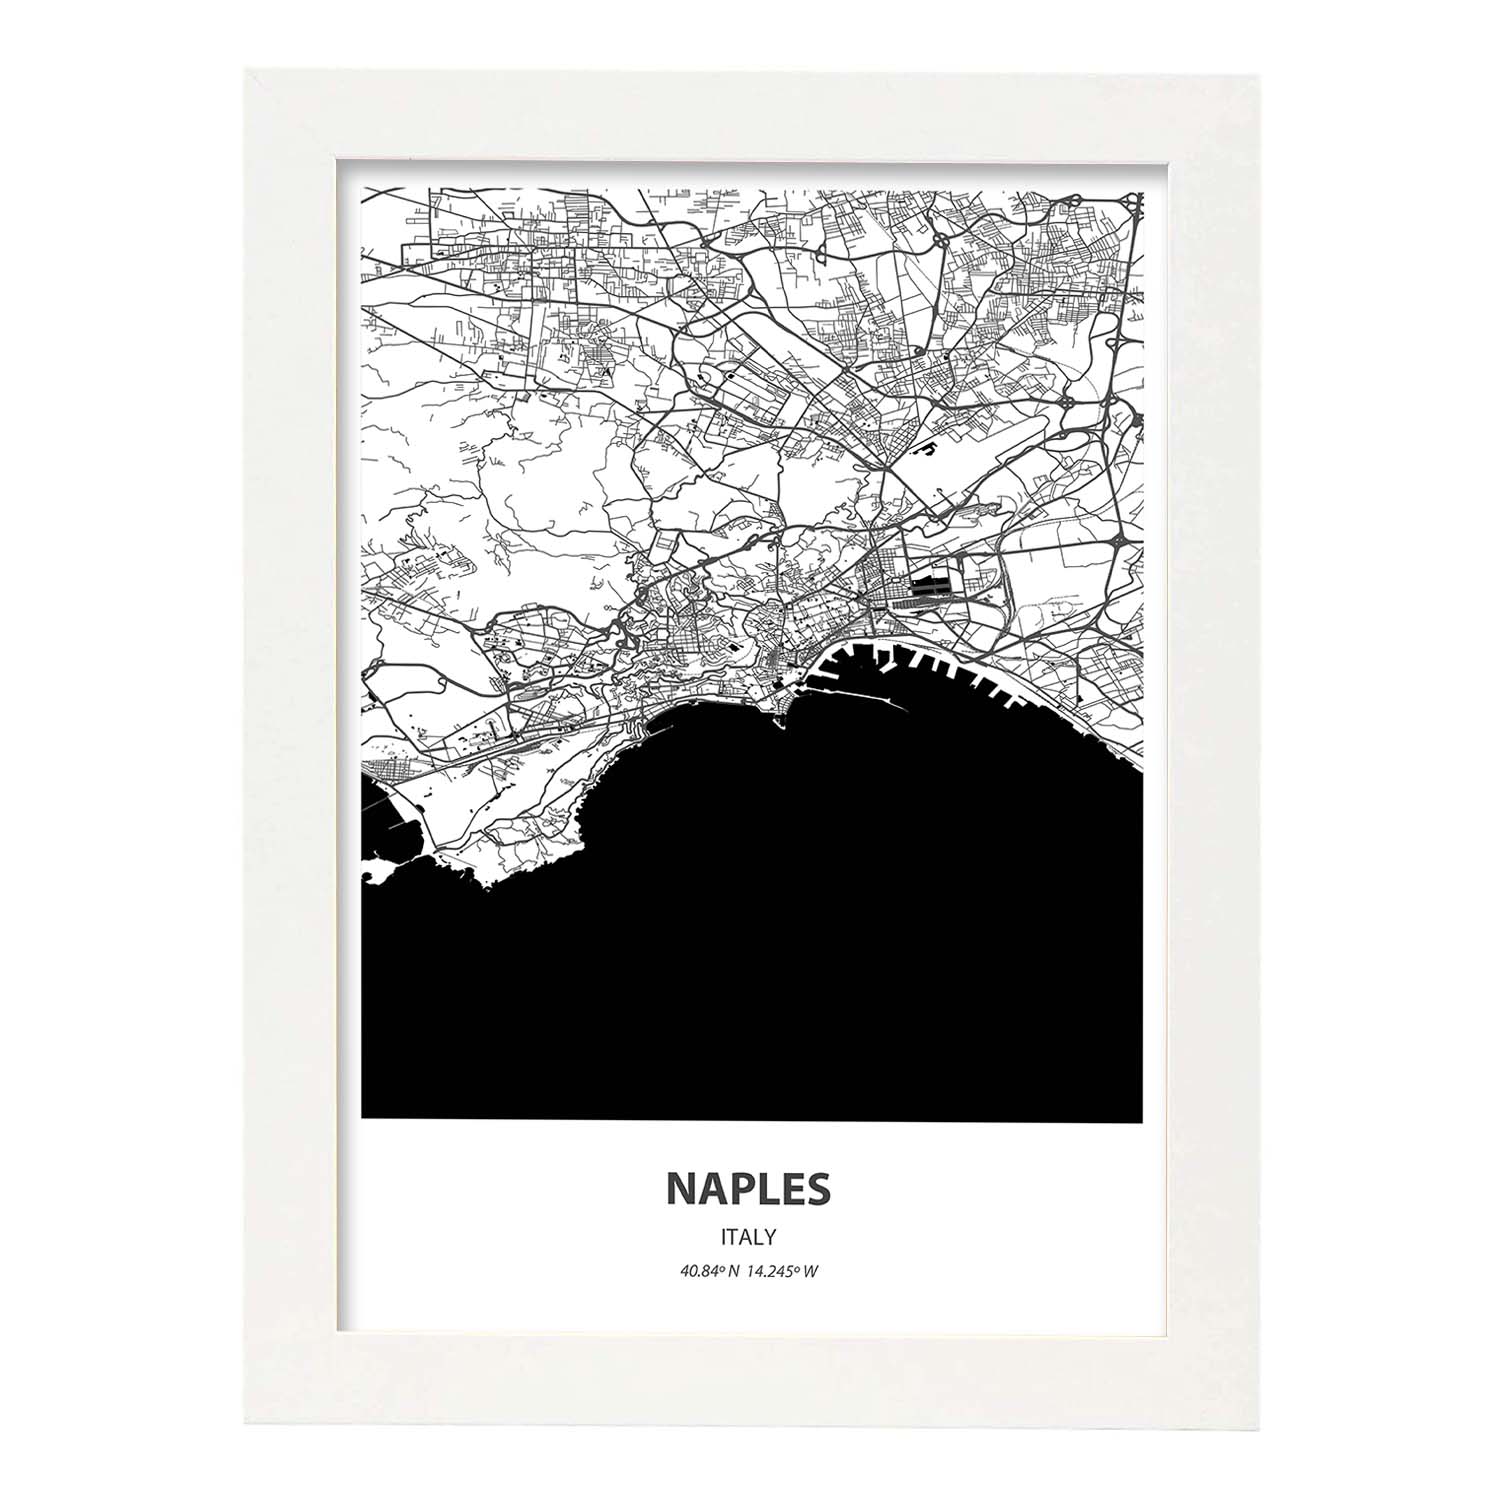 Poster con mapa de Naples - Italia. Láminas de ciudades de Italia con mares y ríos en color negro.-Artwork-Nacnic-A3-Marco Blanco-Nacnic Estudio SL